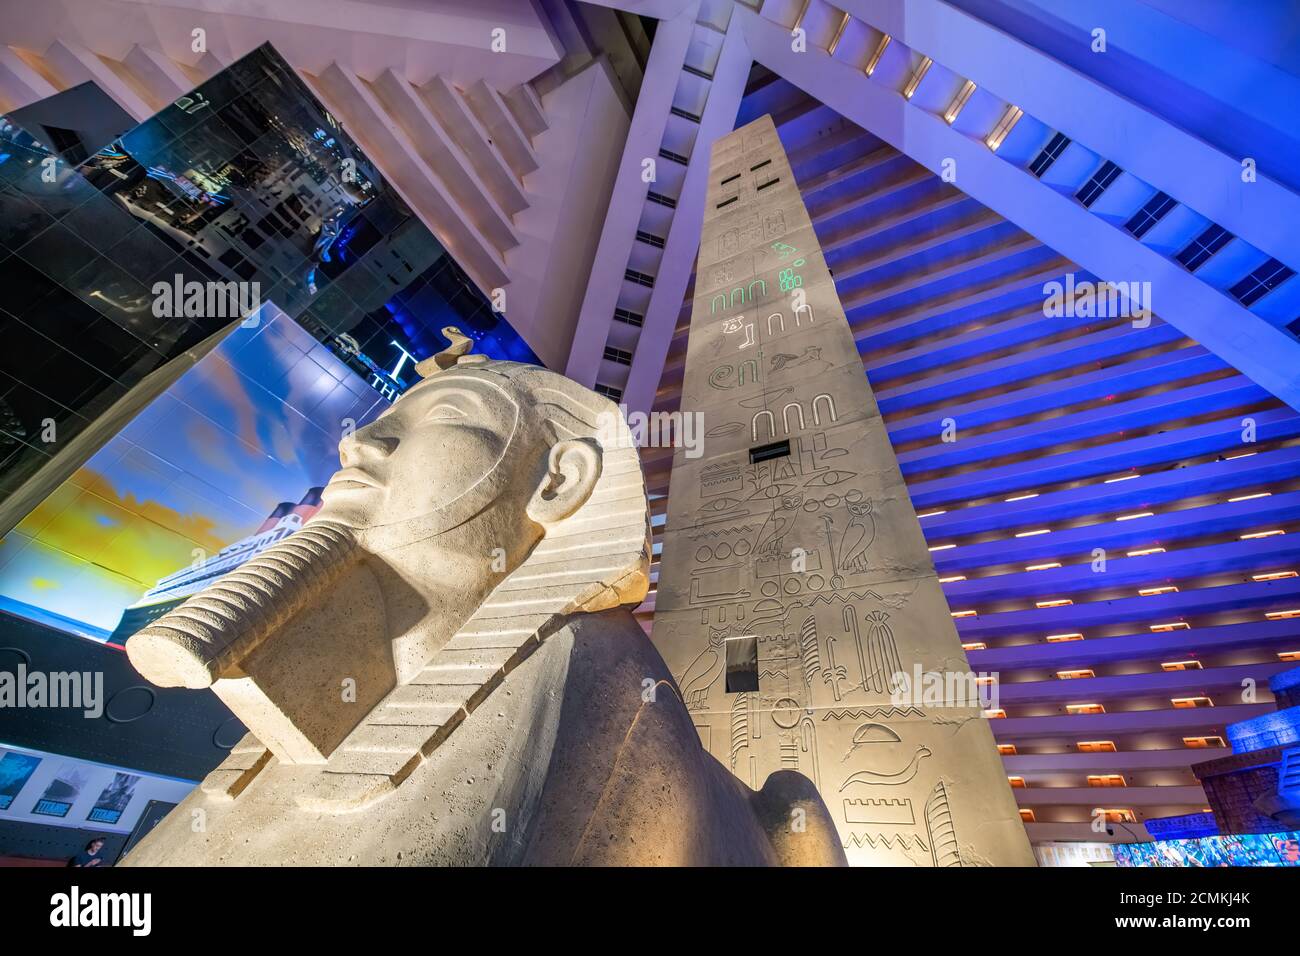 LAS VEGAS, NV - 27 DE JUNIO de 2019: Interior del Luxor Hotel estructura moderna. Foto de stock